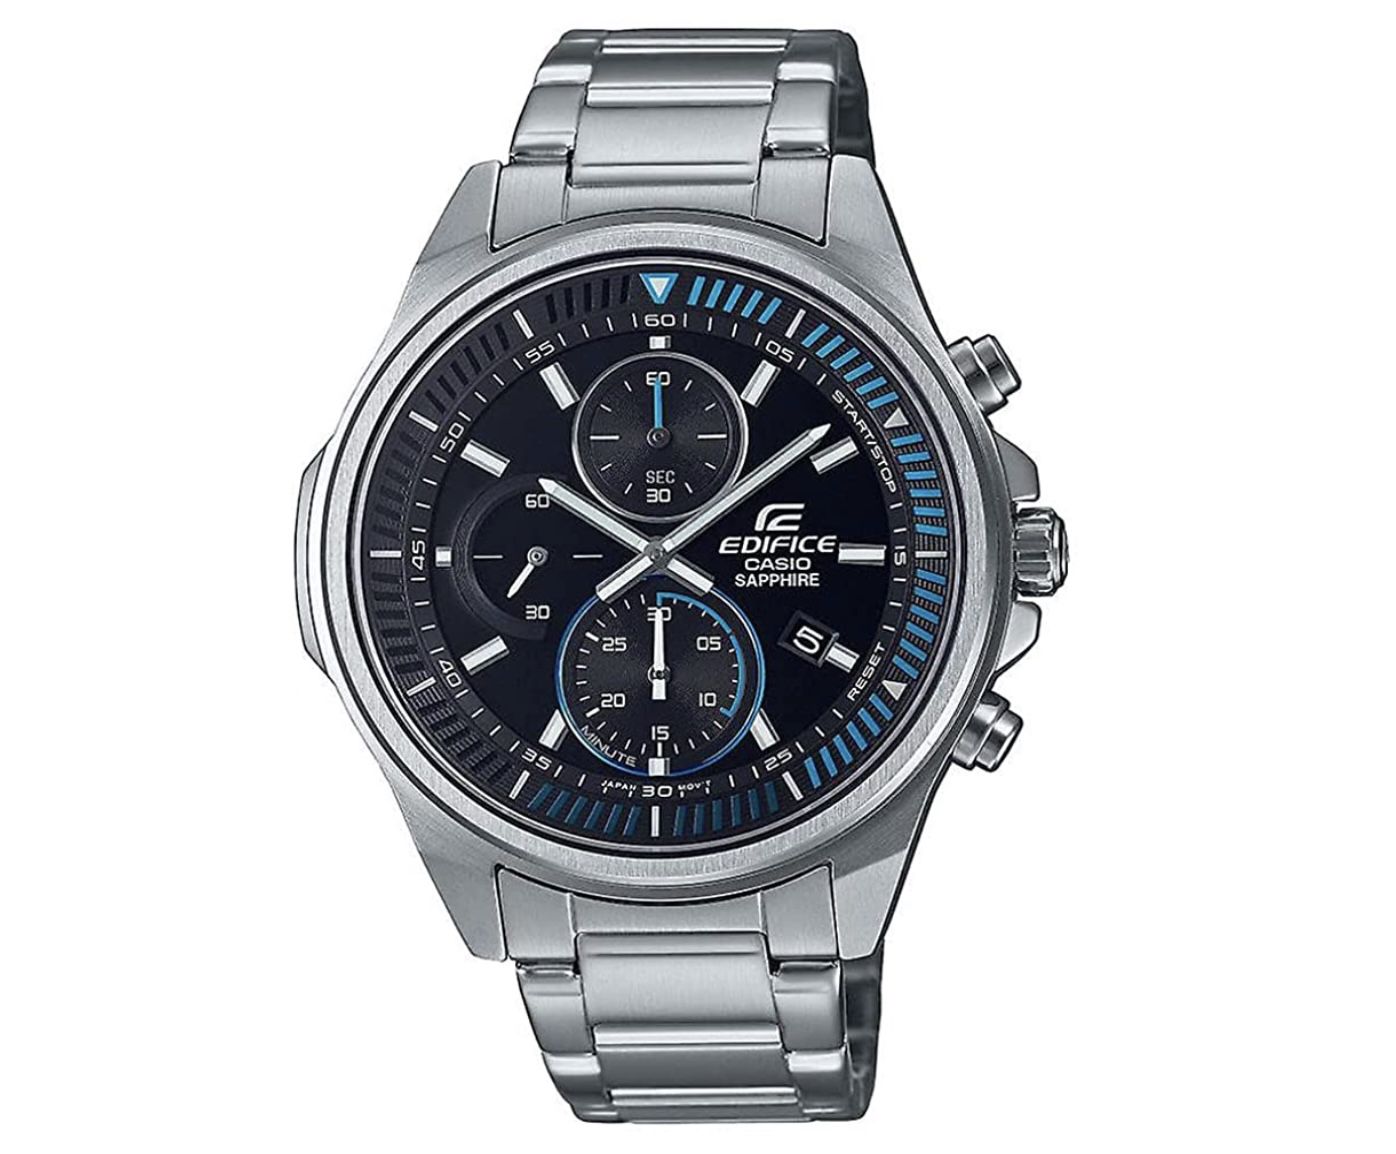 Casio Unisex-Erwachsene Chronograph Quartz Uhr mit Edelstahl-Armband für 91,65€ (statt 119€)